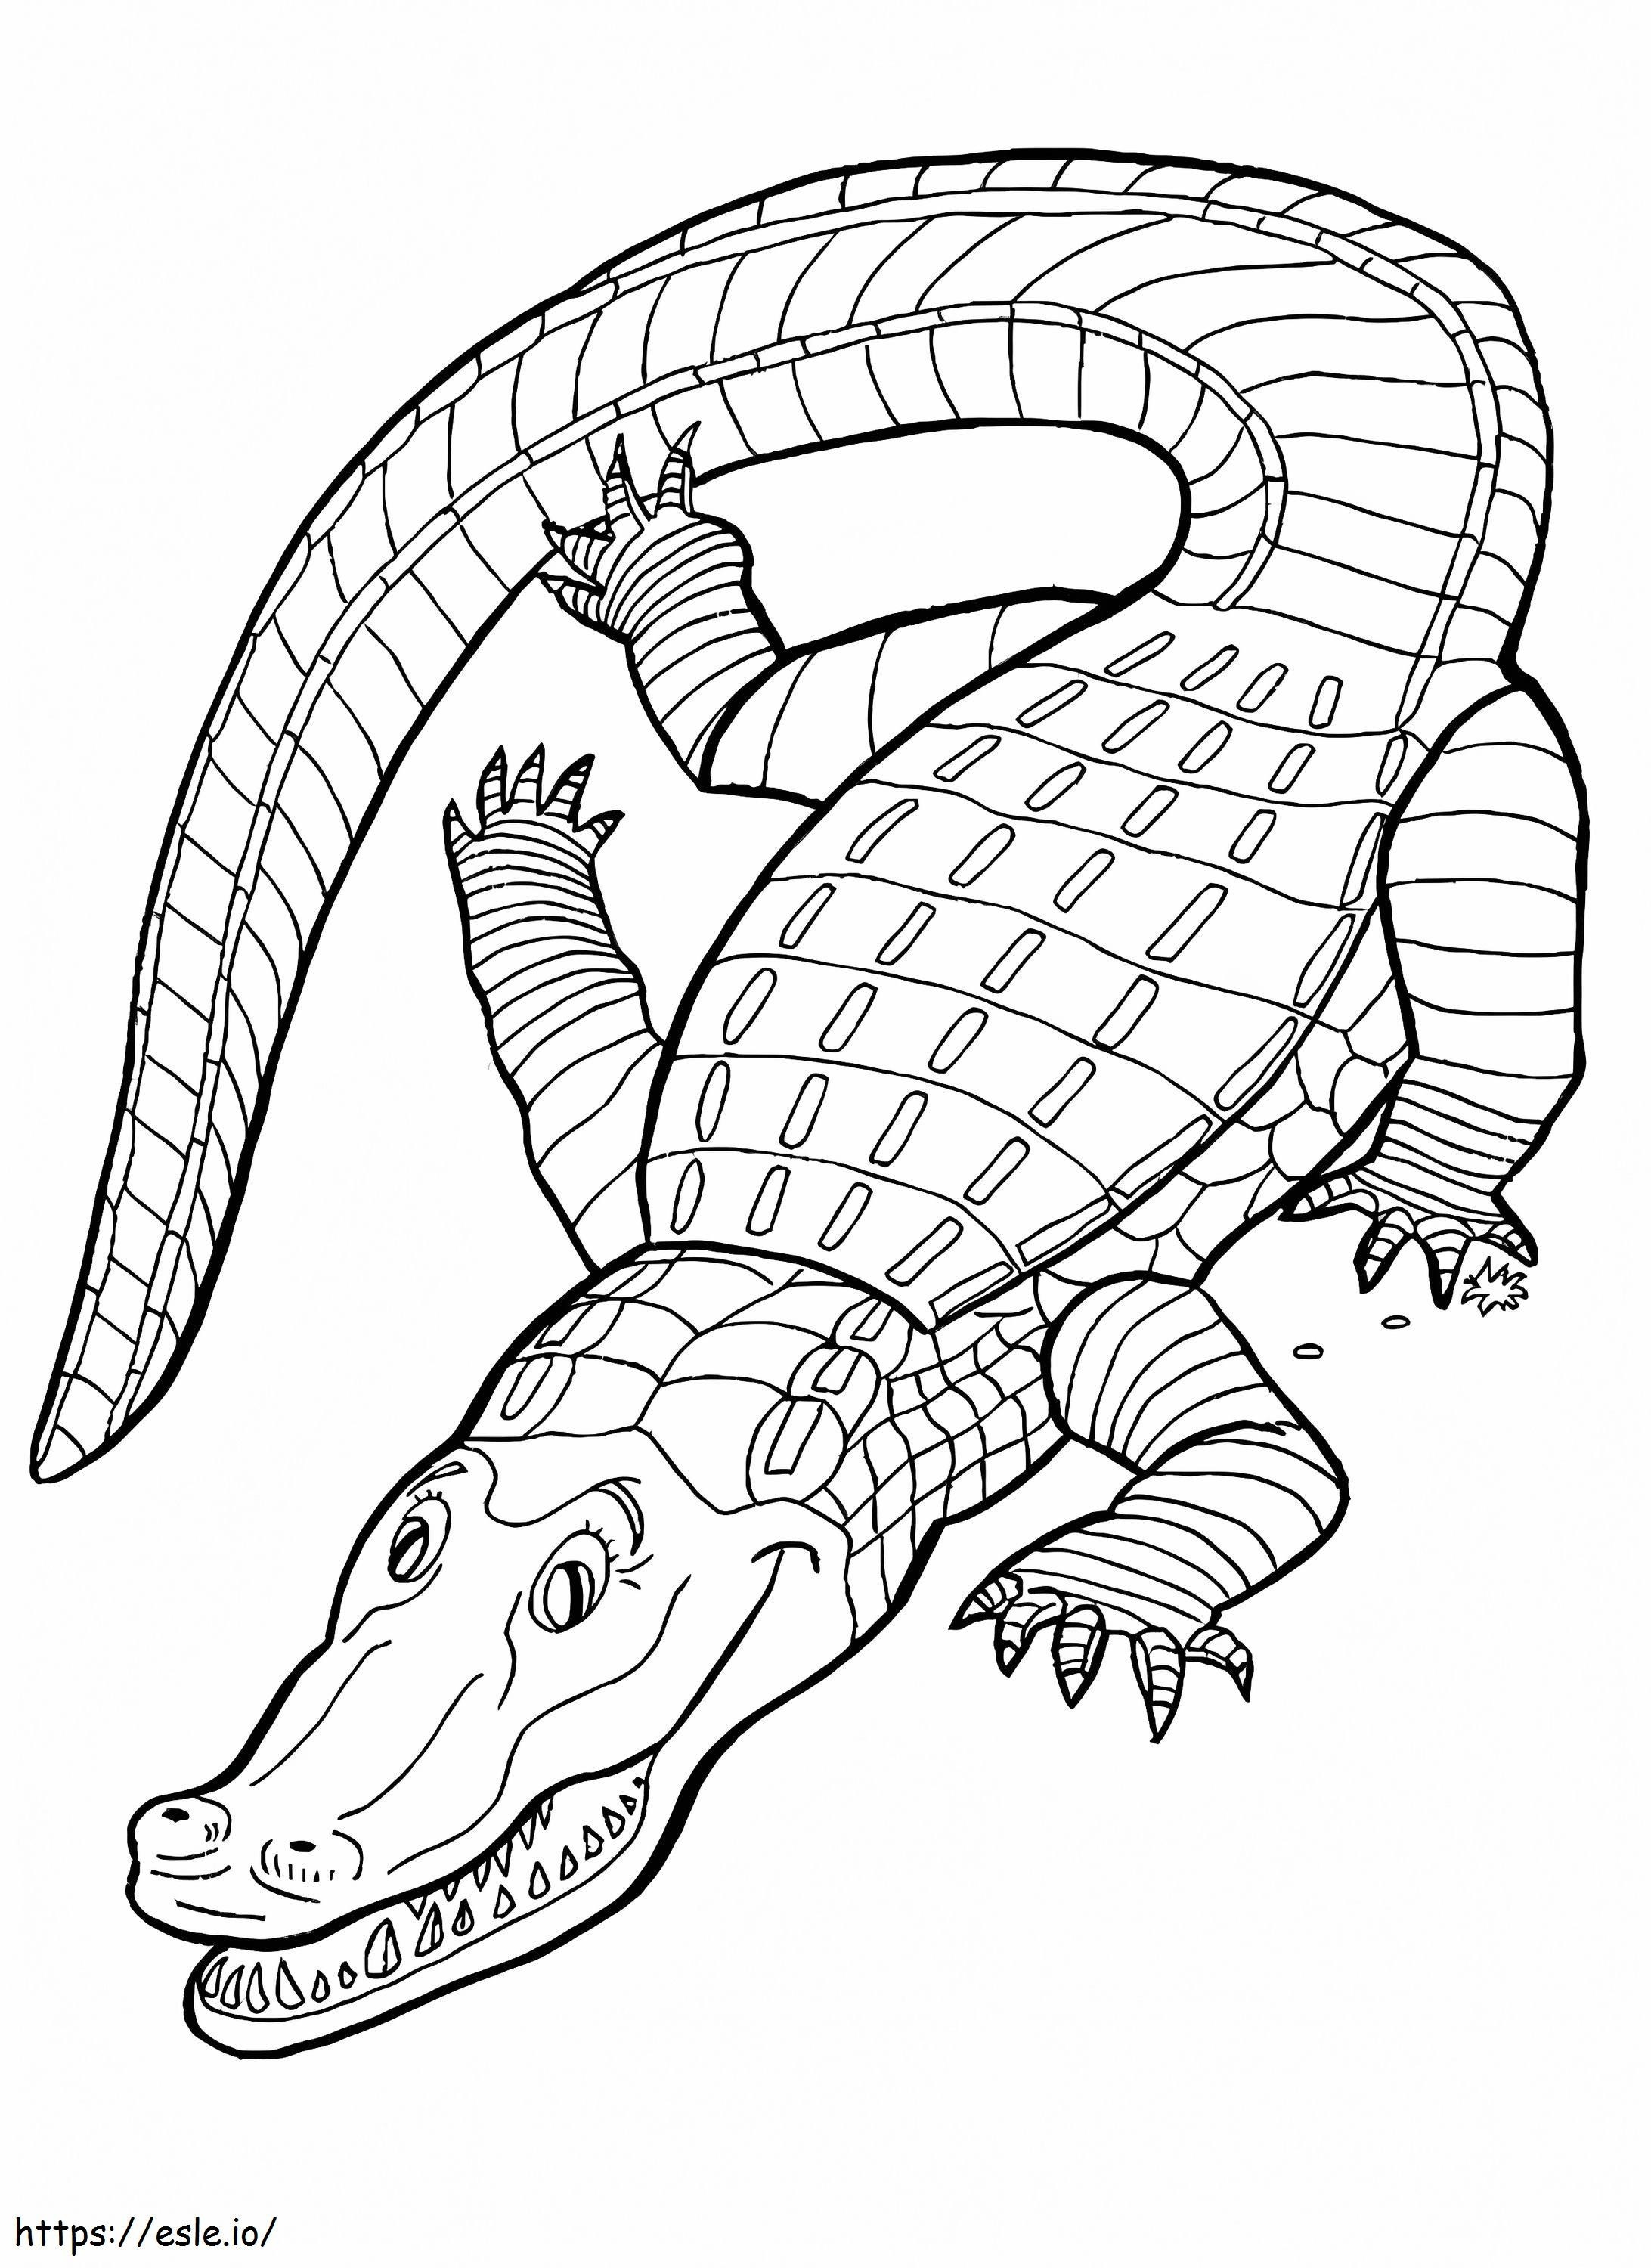 Alligatore stampabile gratuitamente da colorare